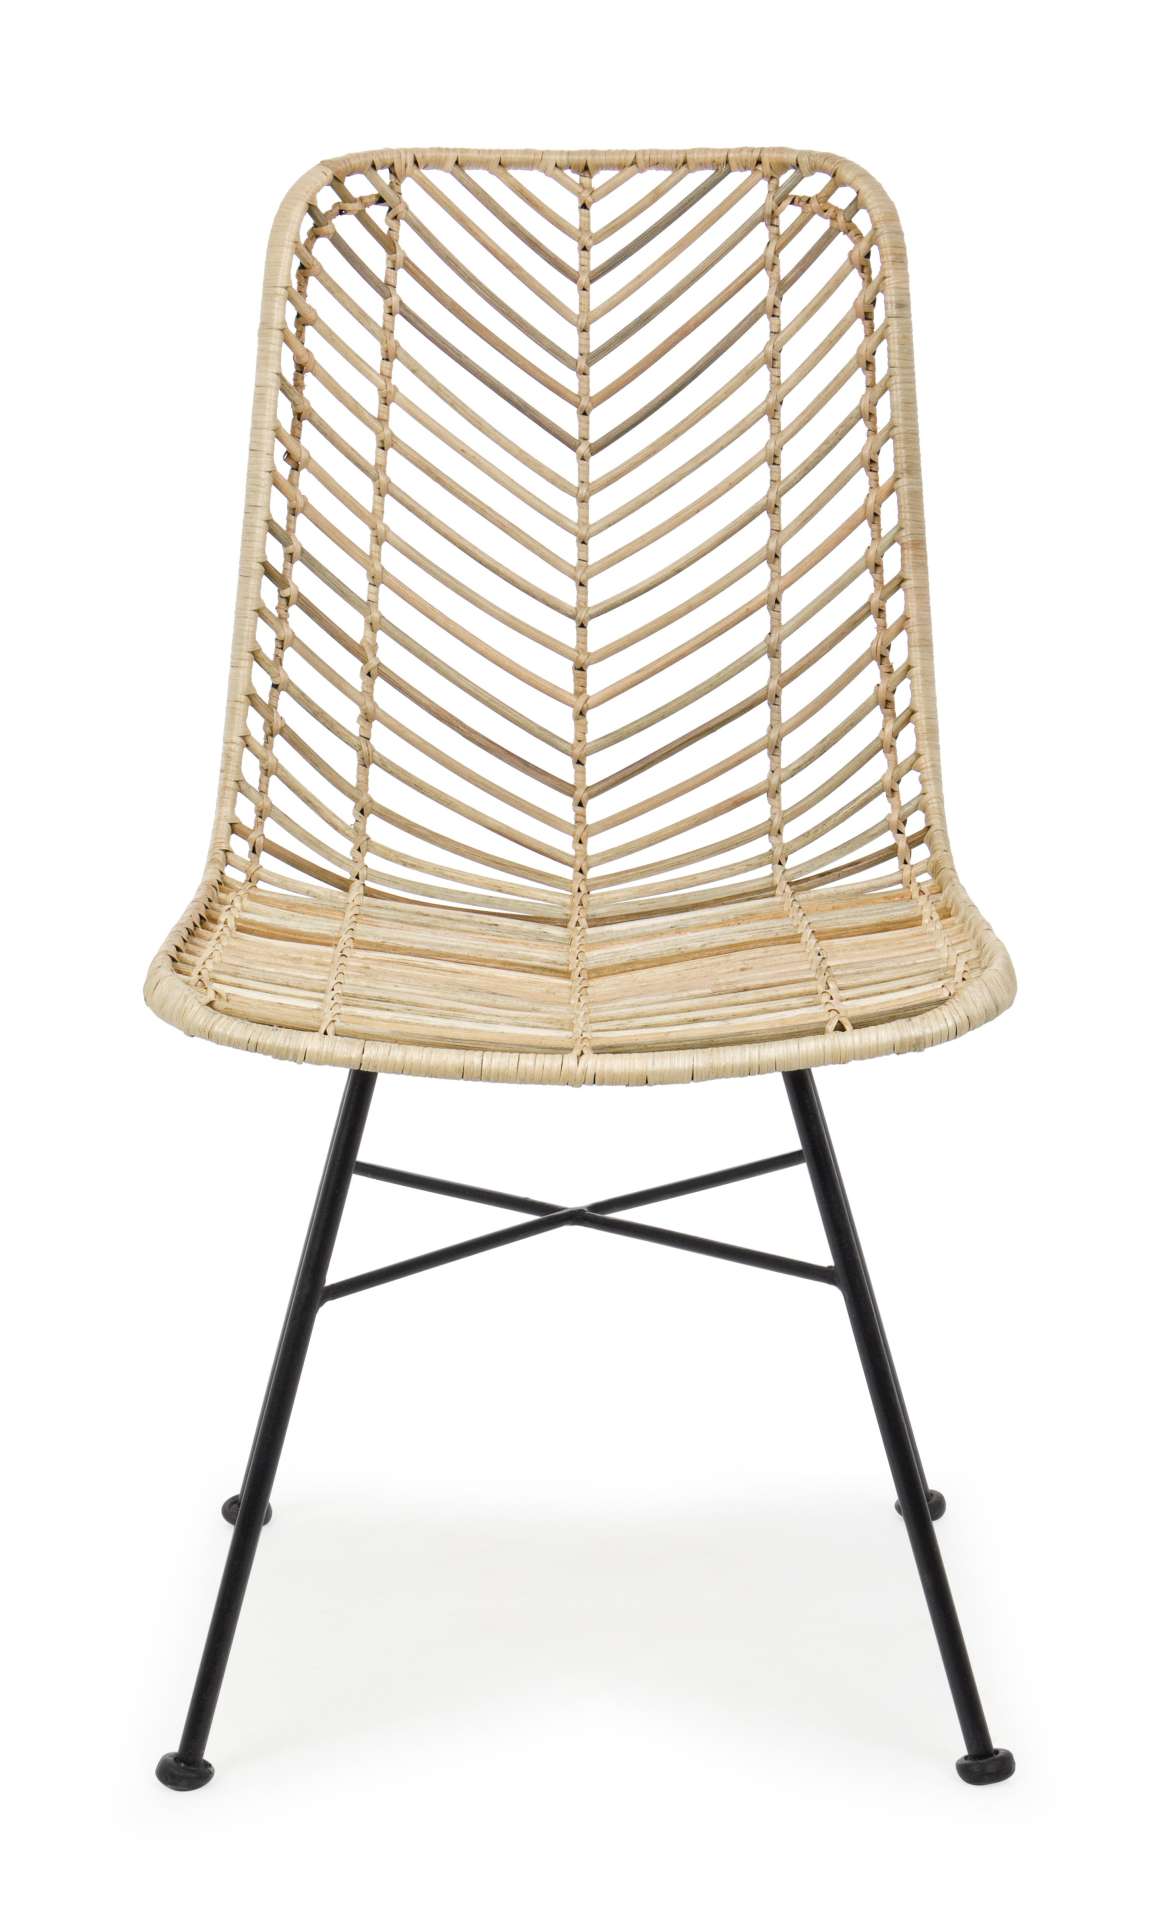 Der Stuhl Lorena überzeugt mit seinem modernem aber auch besonderem Design. Gefertigt wurde der Stuhl aus Rattan, welcher einen natürlichen Farbton besitzt. Das Gestell ist aus Metall und ist Schwarz. Die Sitzhöhe beträgt 45 cm.